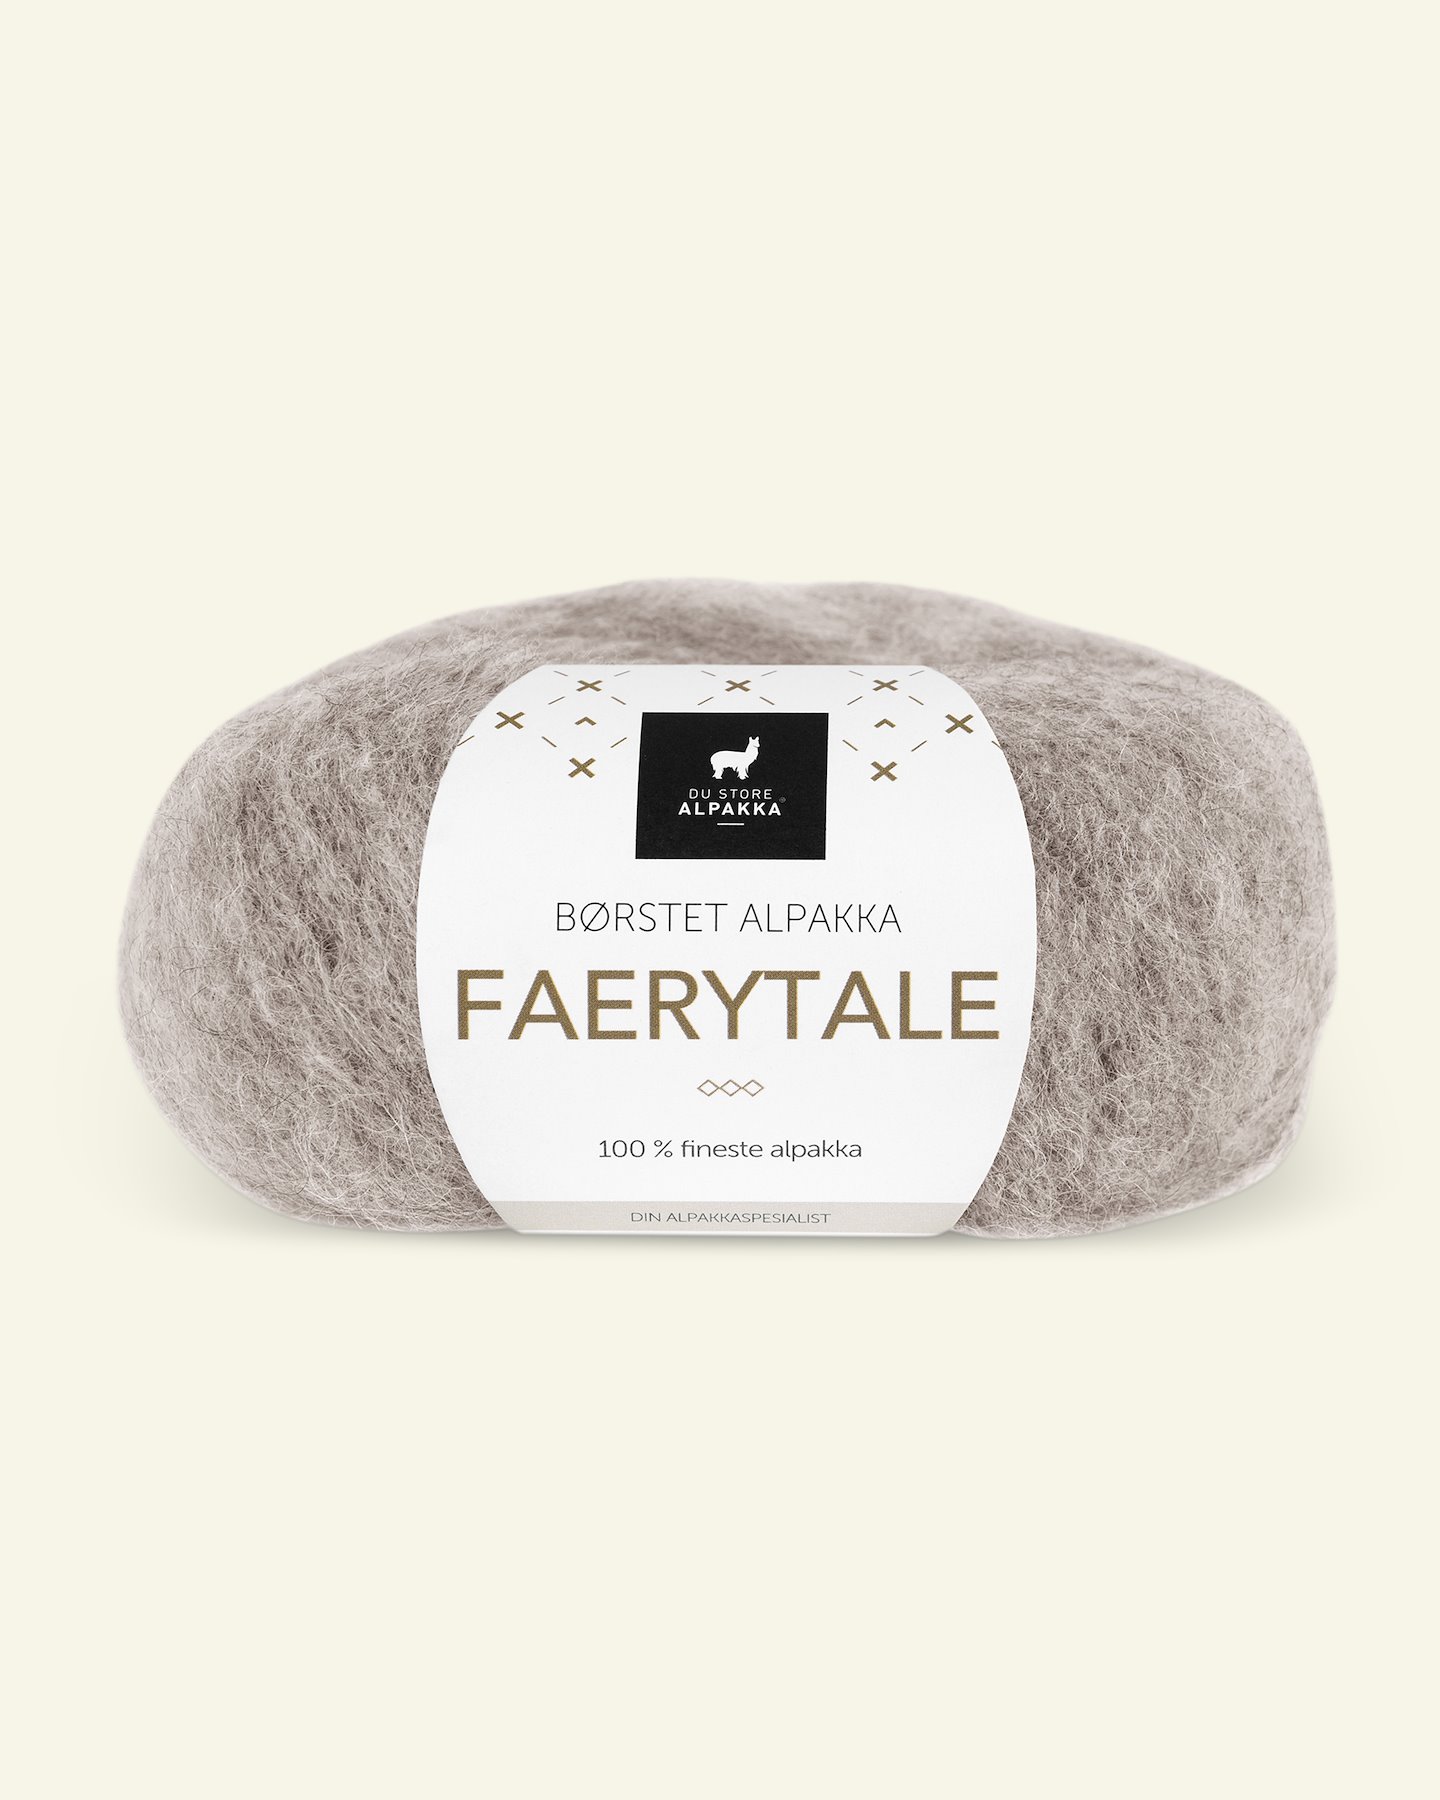 Du Store Alpakka, børsted alpakkagarn "Faerytale", lys gråbrun (758) 90000592_pack